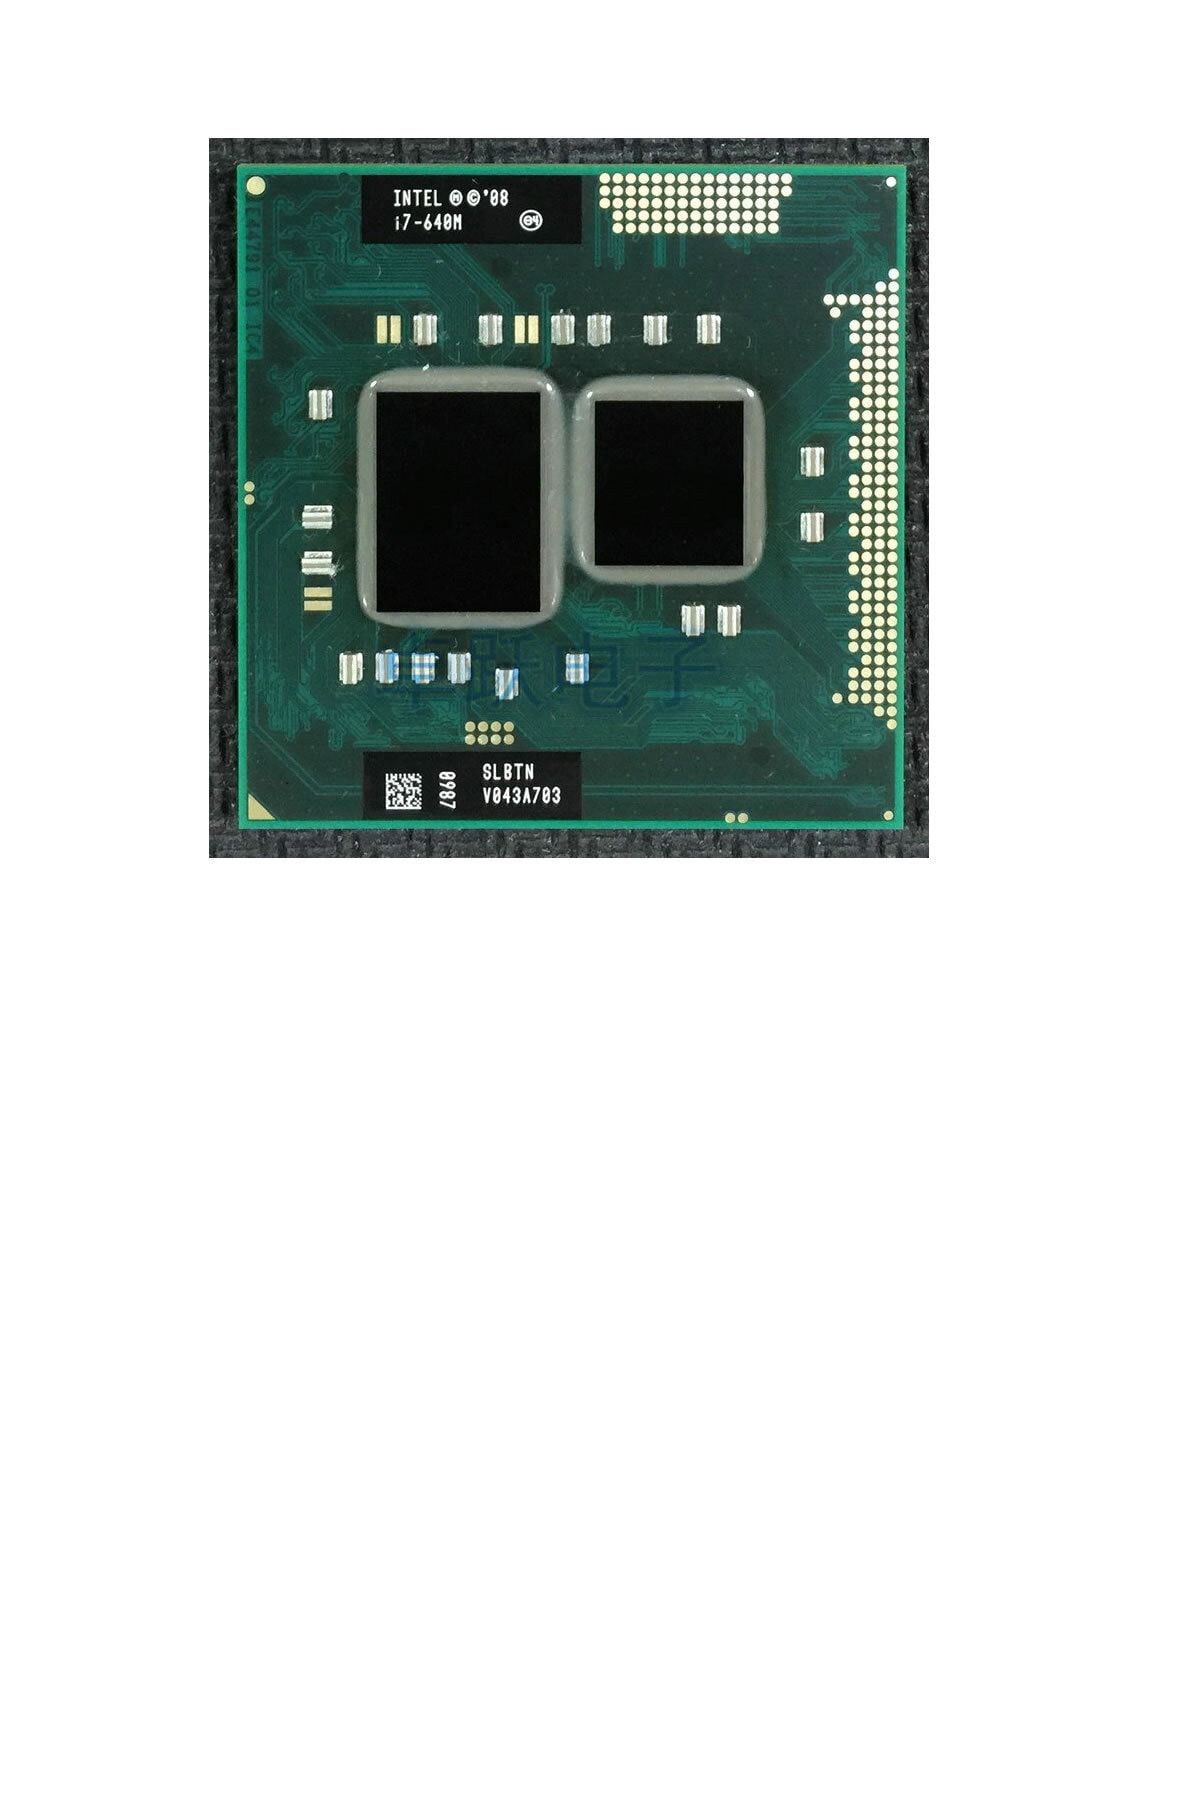 Intel Orijinal Cpu Core I7 640m Çift Çekirdekli 2.8ghz Pga 988 Dizüstü Bilgisayar Cpu Işlemci